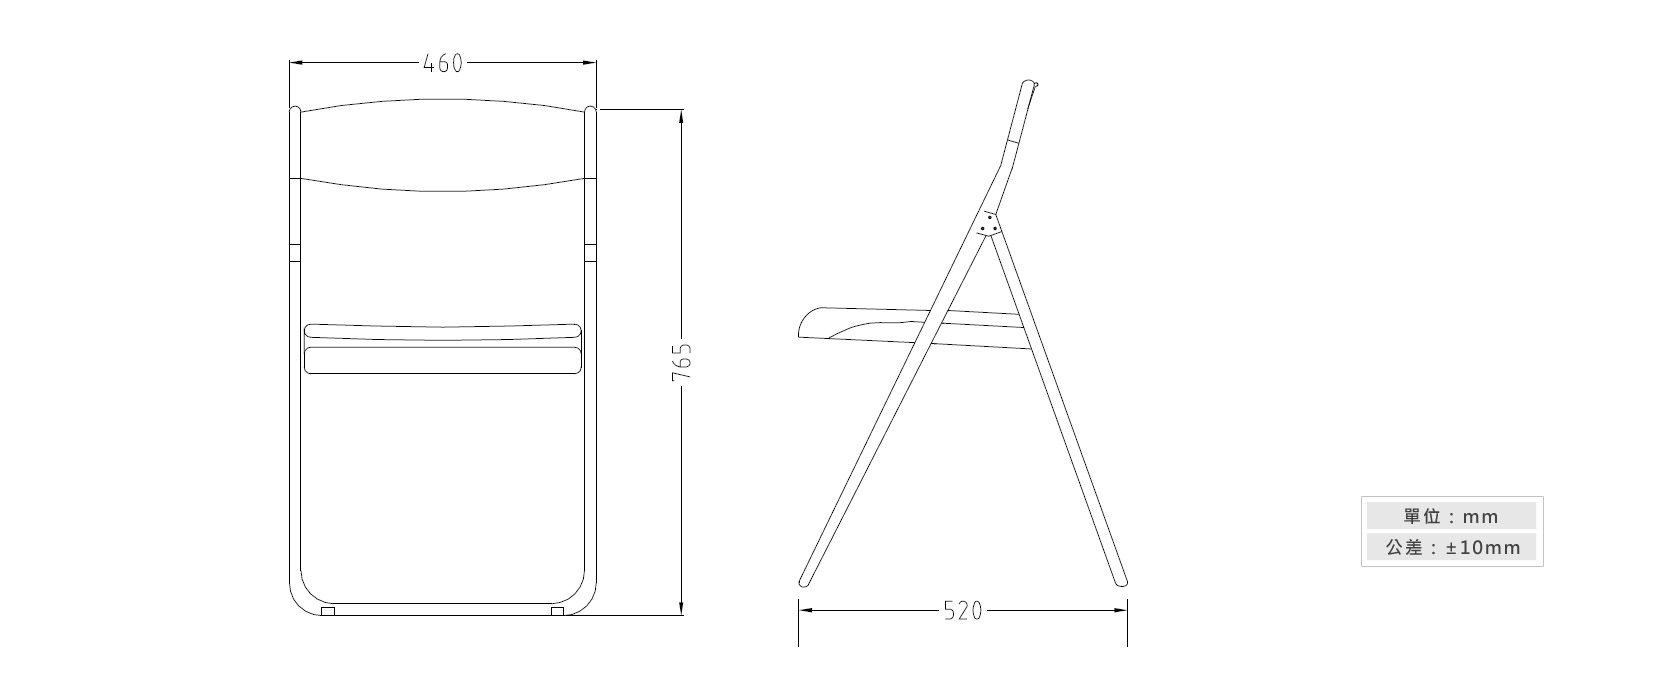 2-26 塑鋼摺合椅材質說明